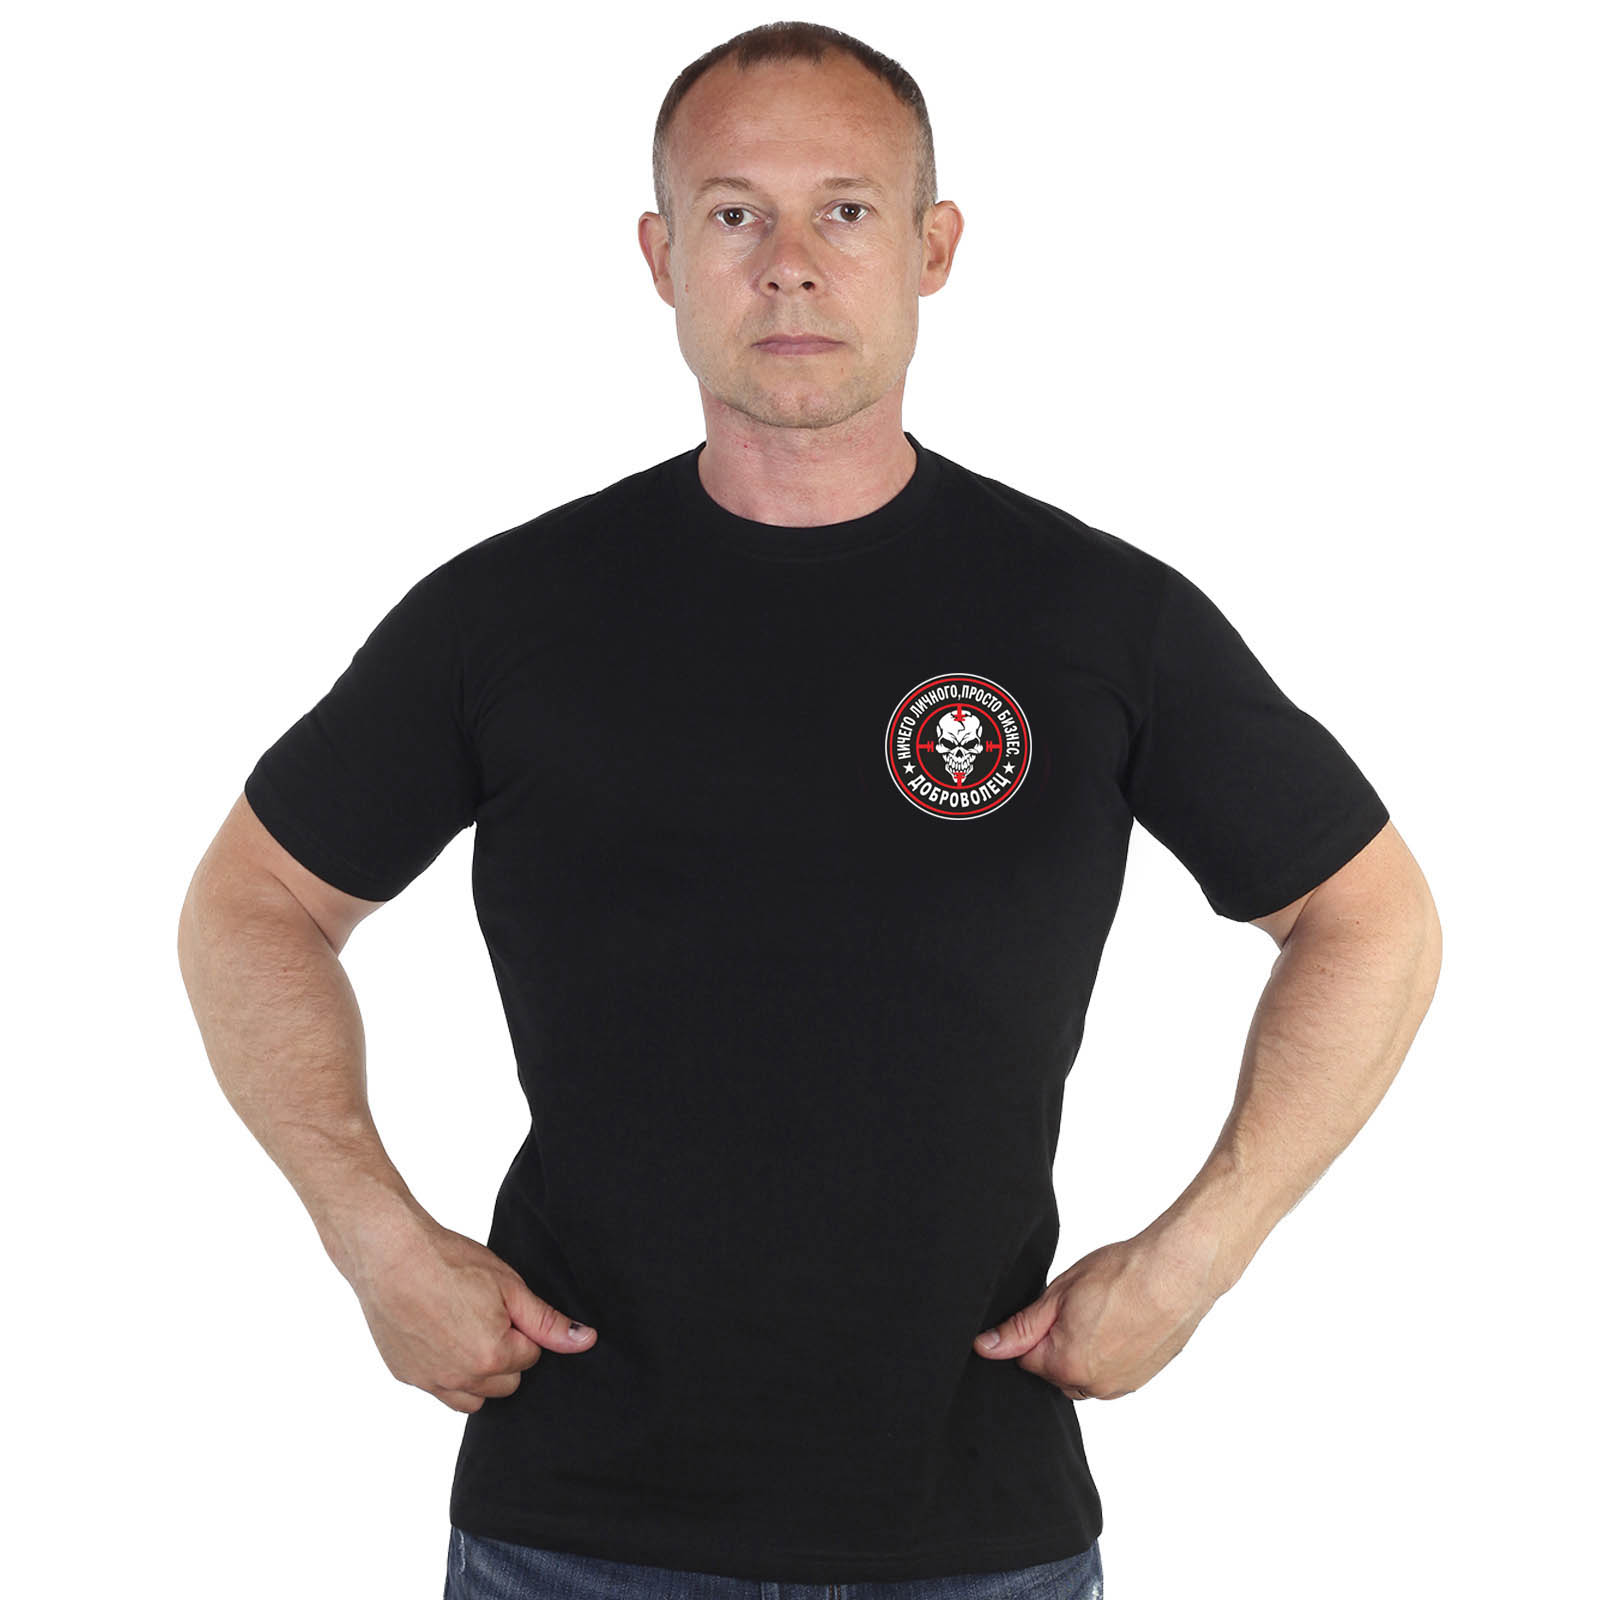 Купить мужскую черную футболку с термоаппликацией Доброволец онлайн